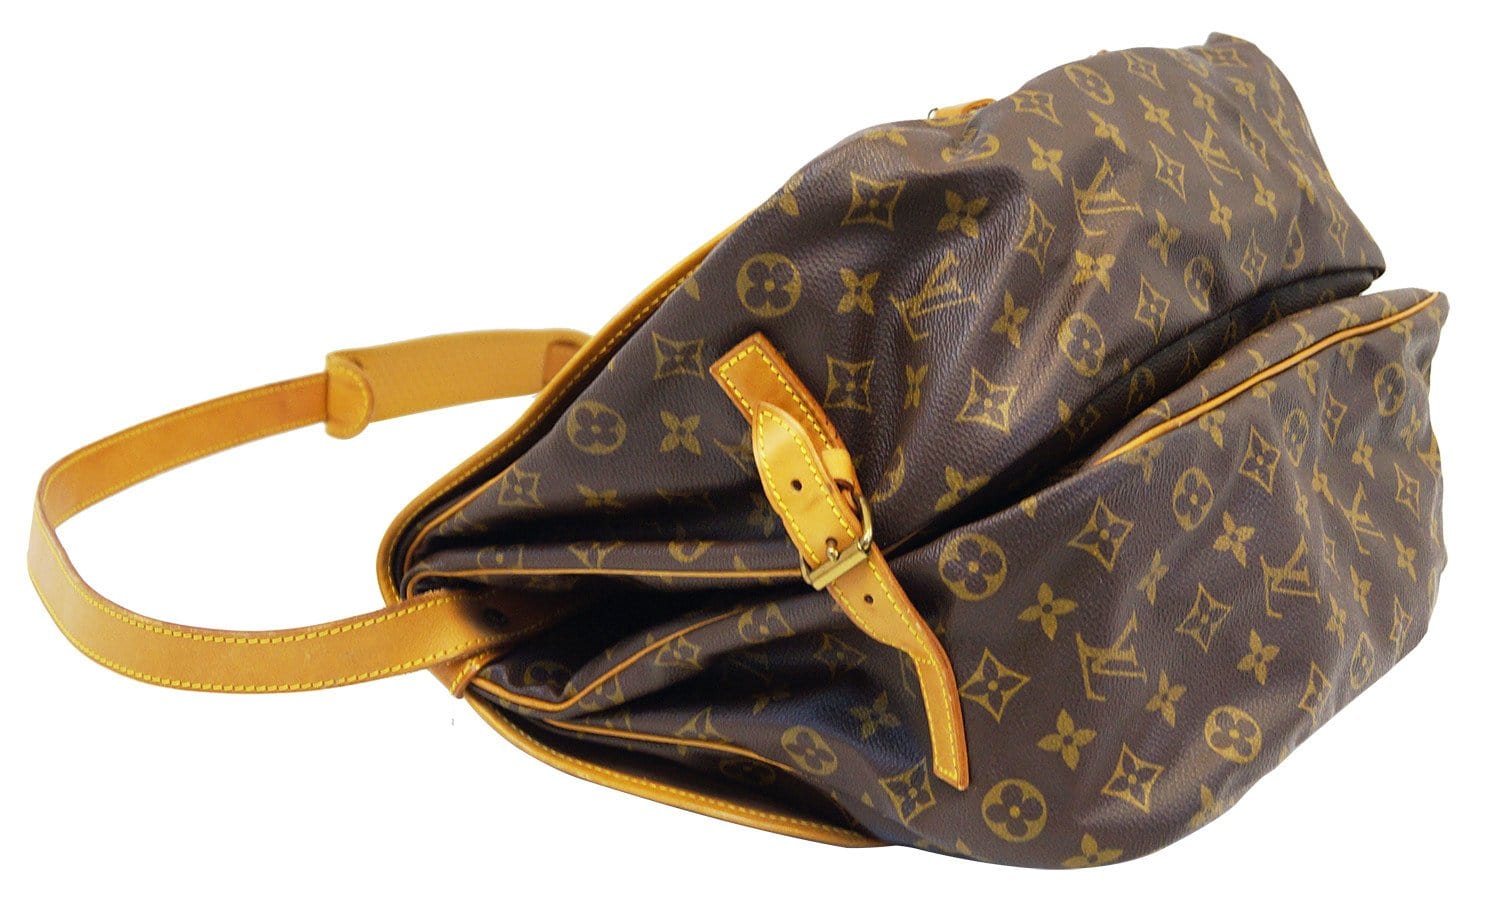 Louis Vuitton Saumur Shoulder bag 393744